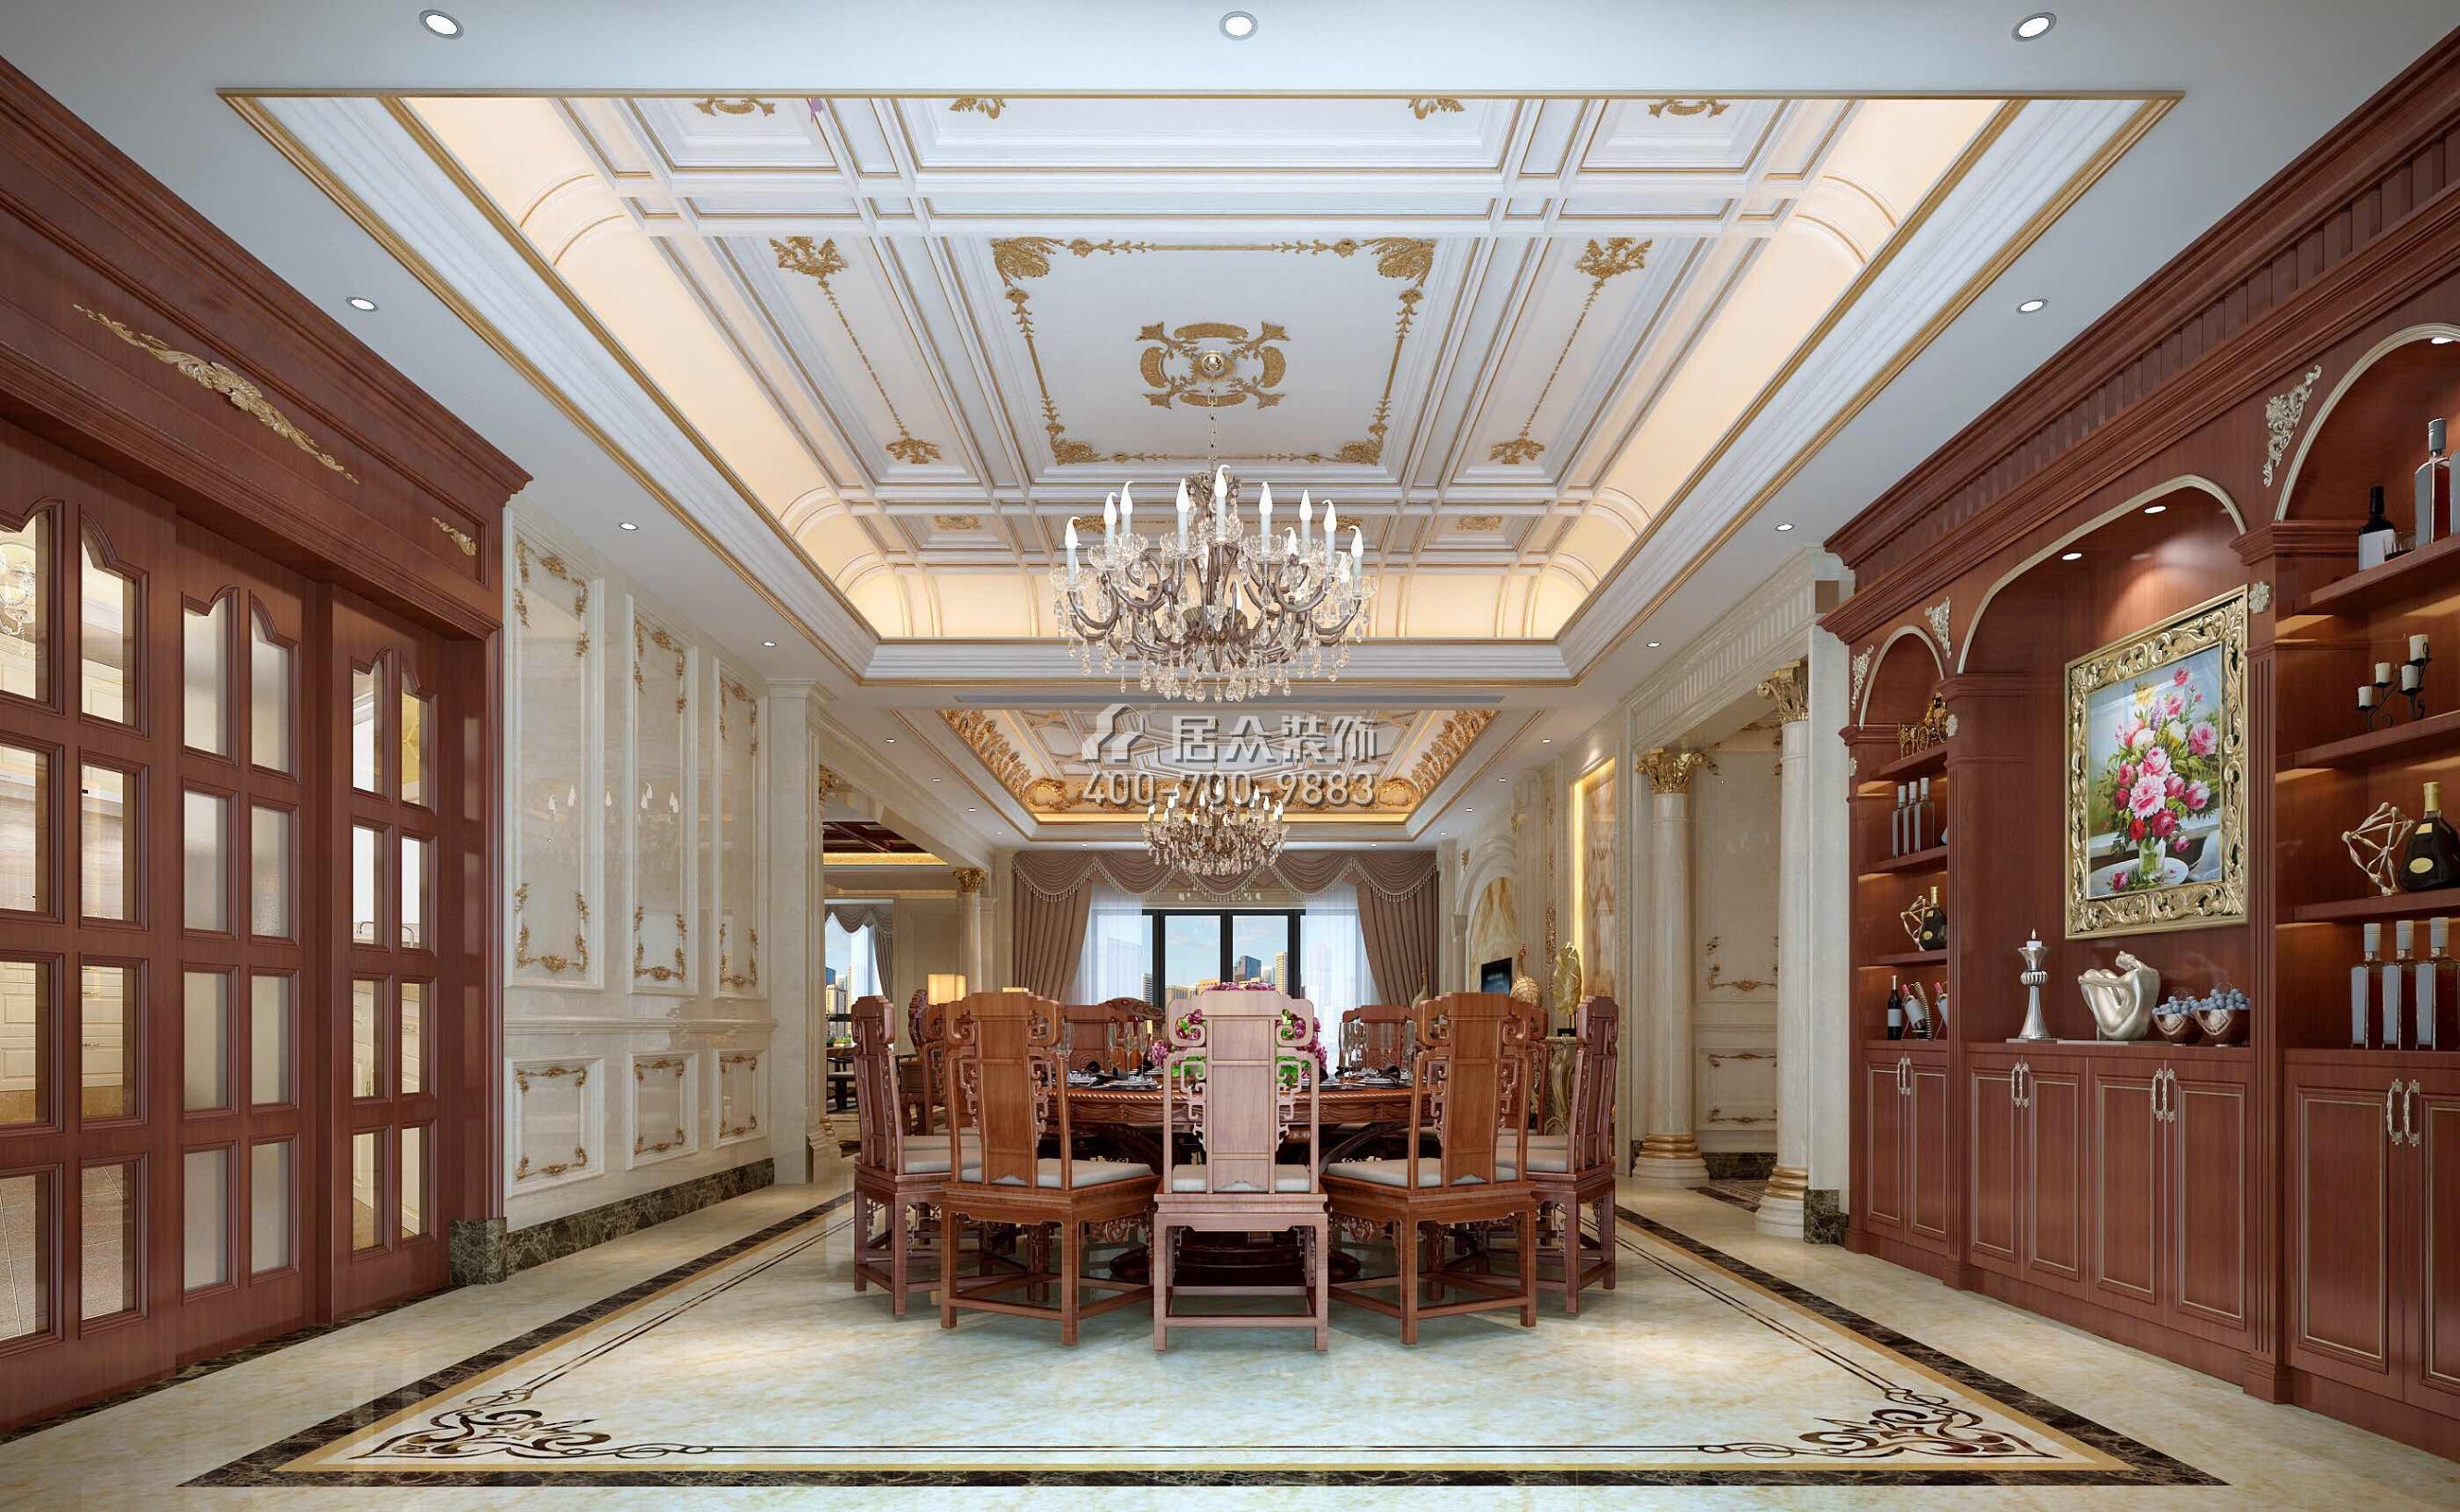 龍泉豪苑560平方米混搭風格平層戶型餐廳裝修效果圖